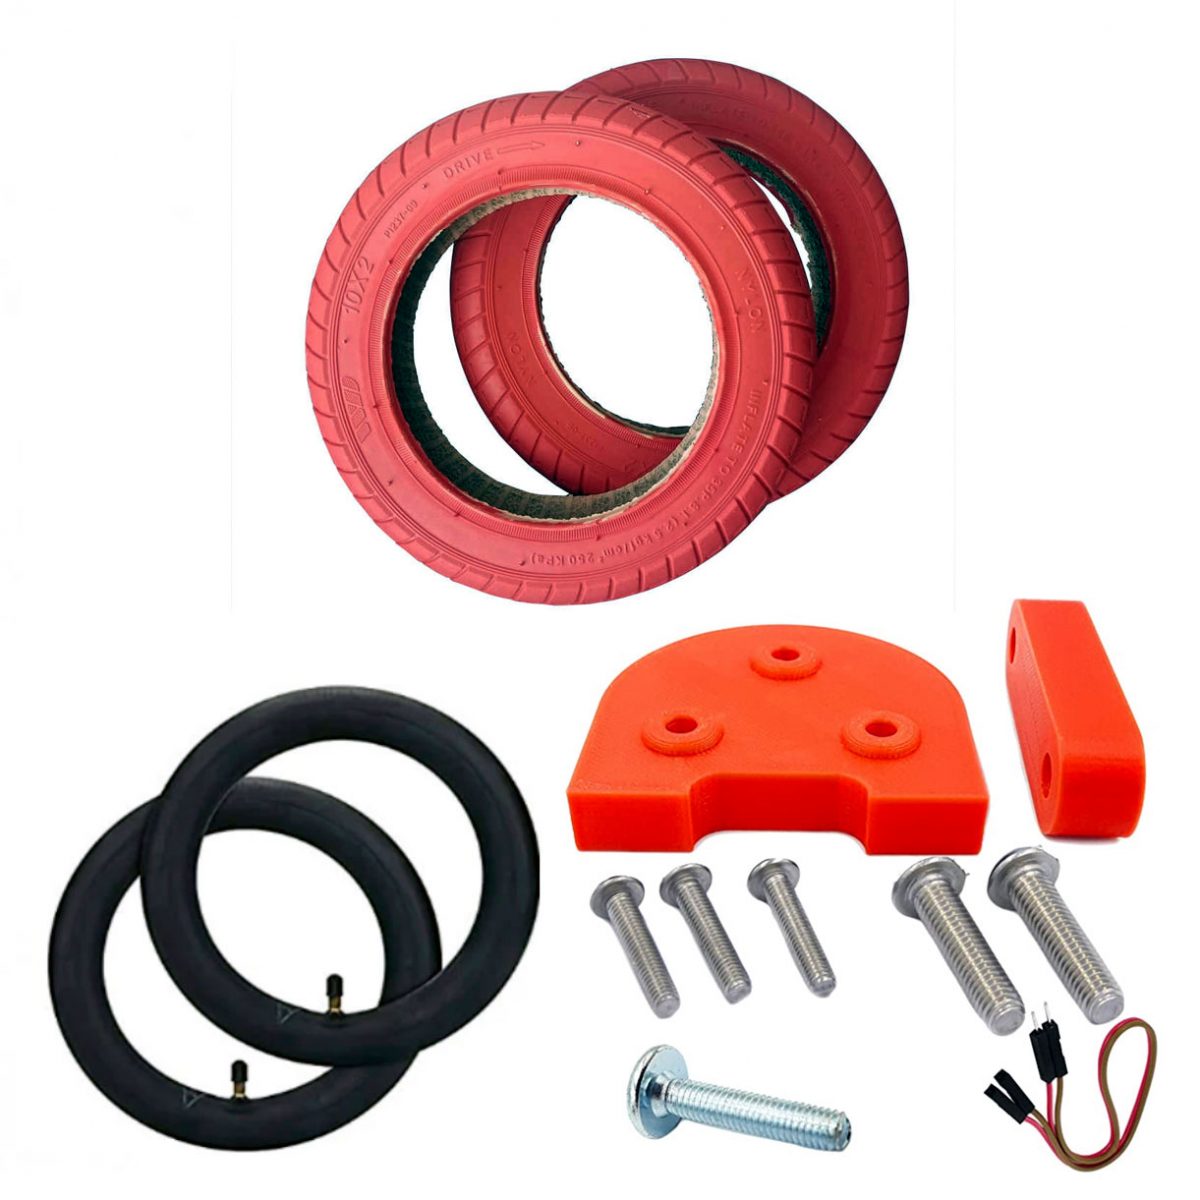 Kit 10 Pouces Rouge M365, Essential, 1S, Pro/2 Miscooter pneu